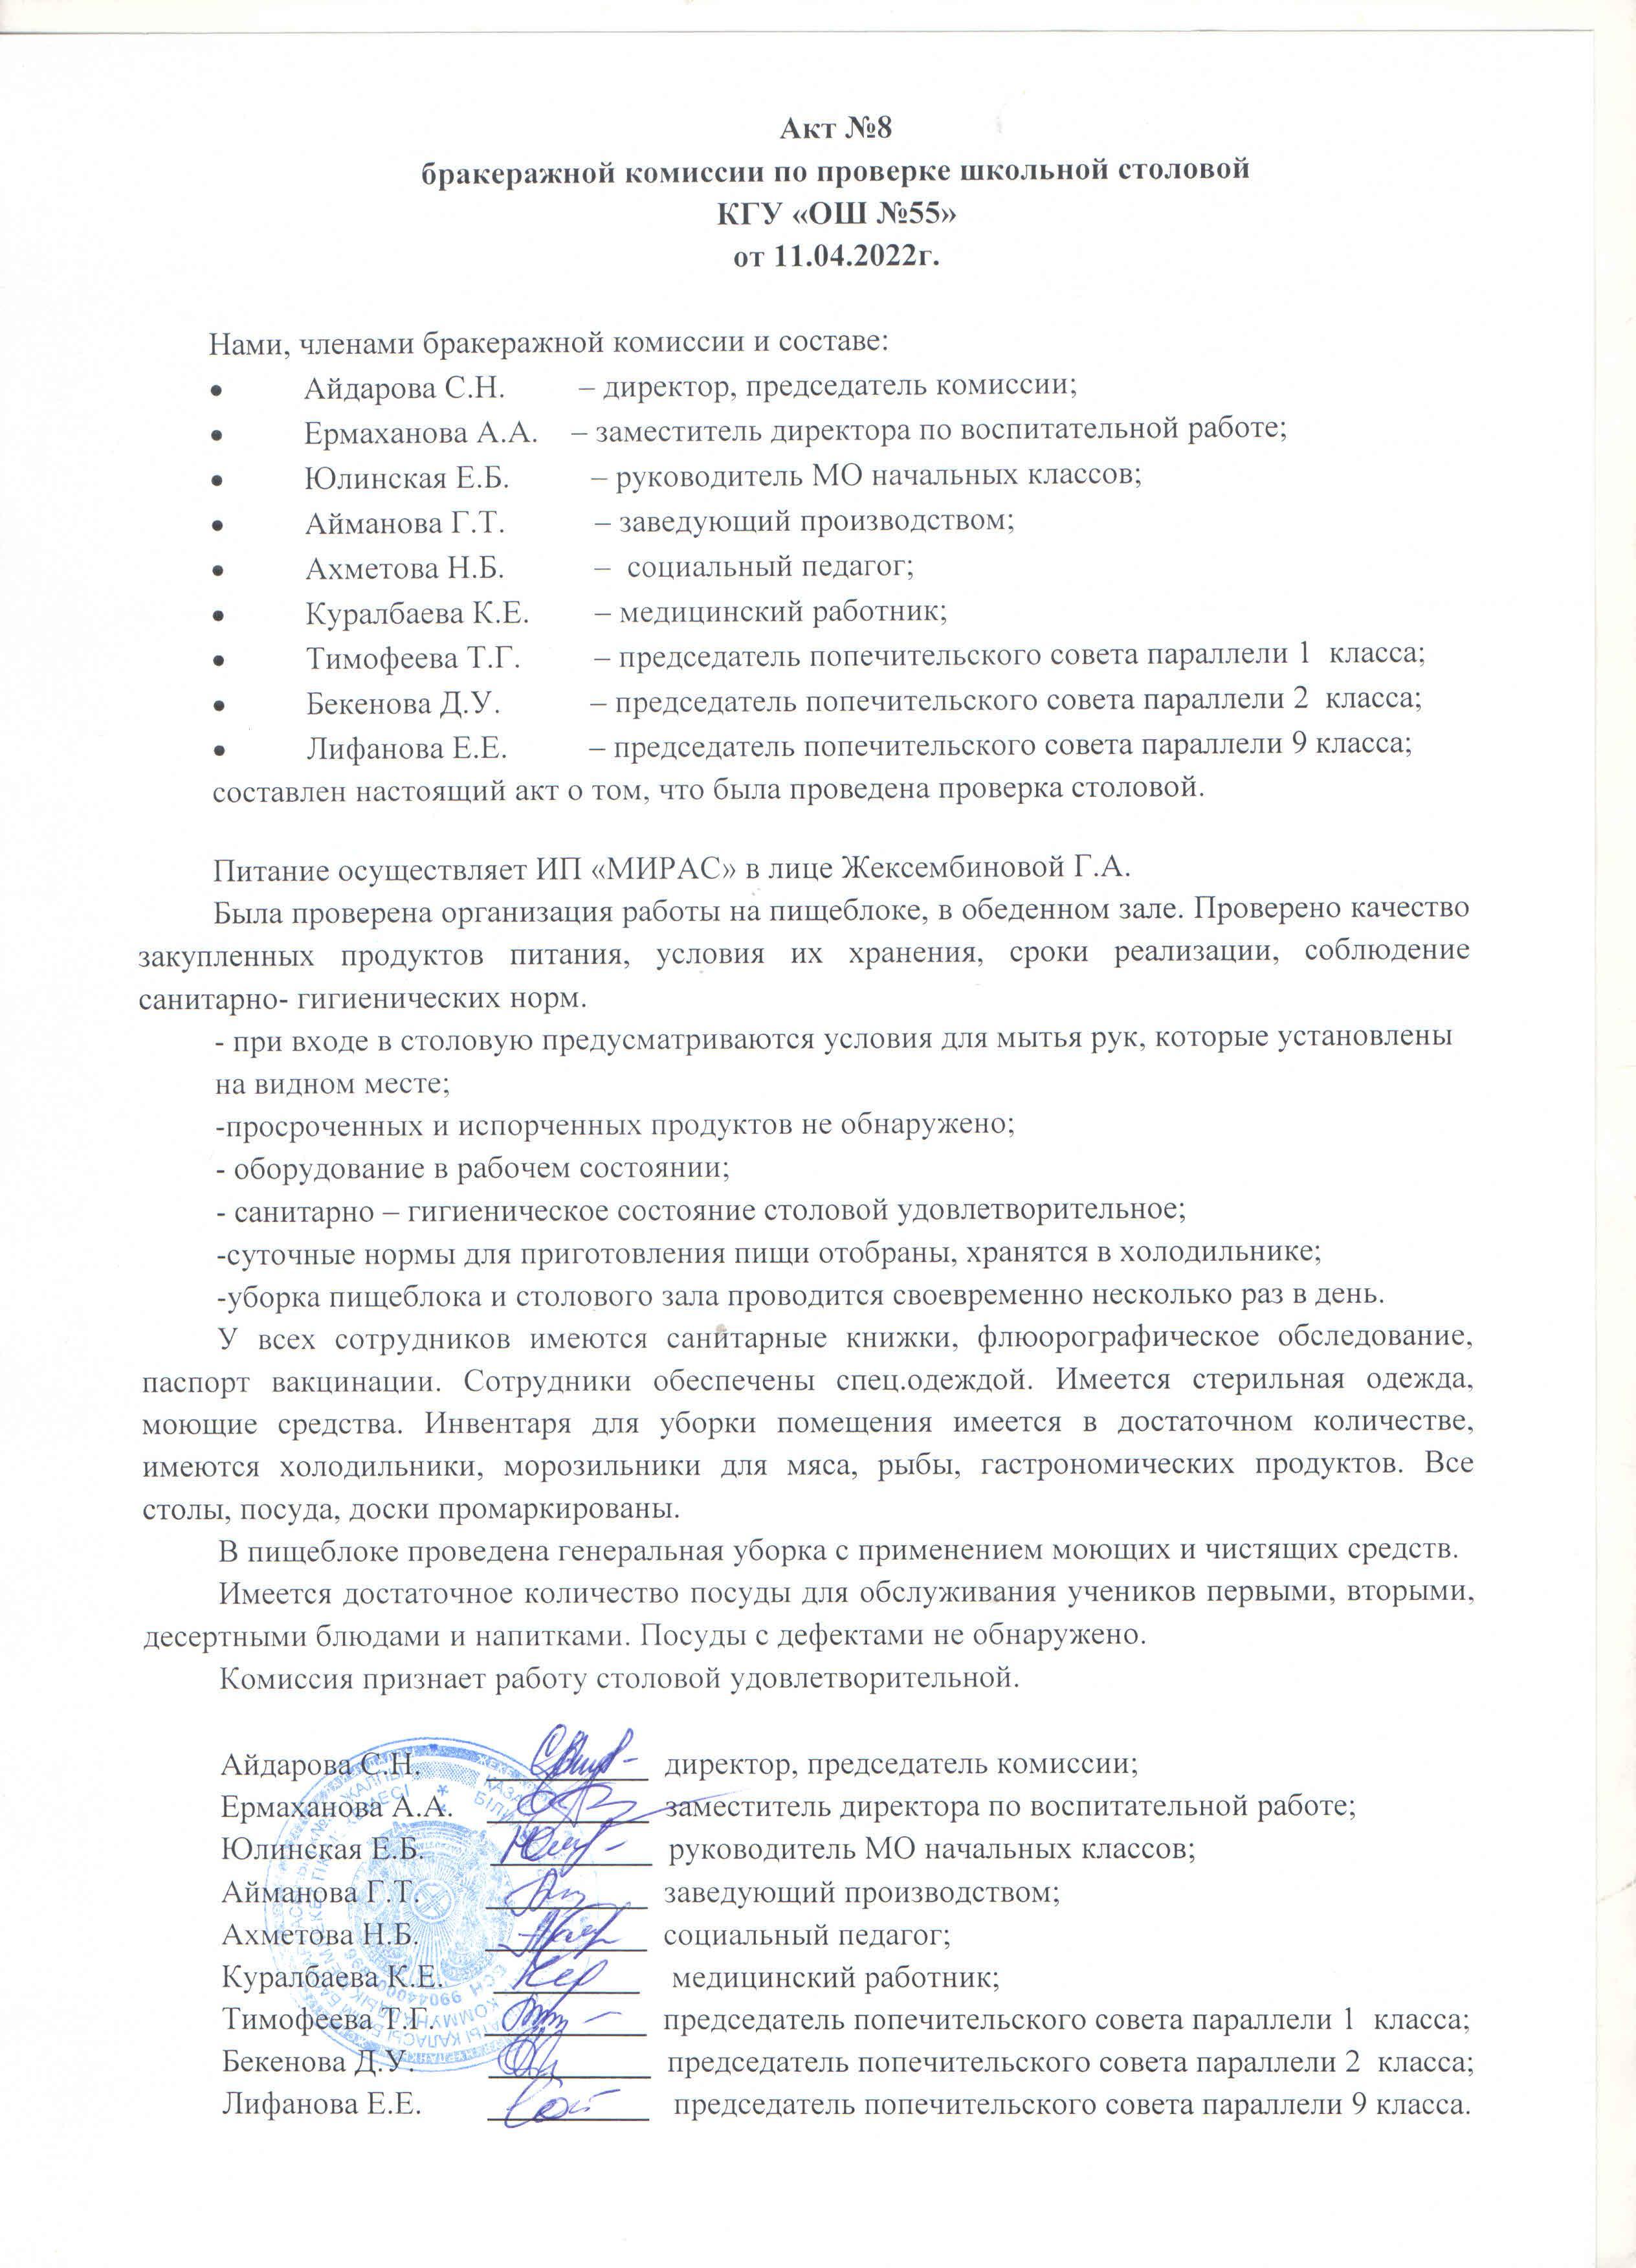 Акт №8 бракеражной комиссии по проверке школьной столовой КГУ "ОШ №55 от 11.04.2022 г.